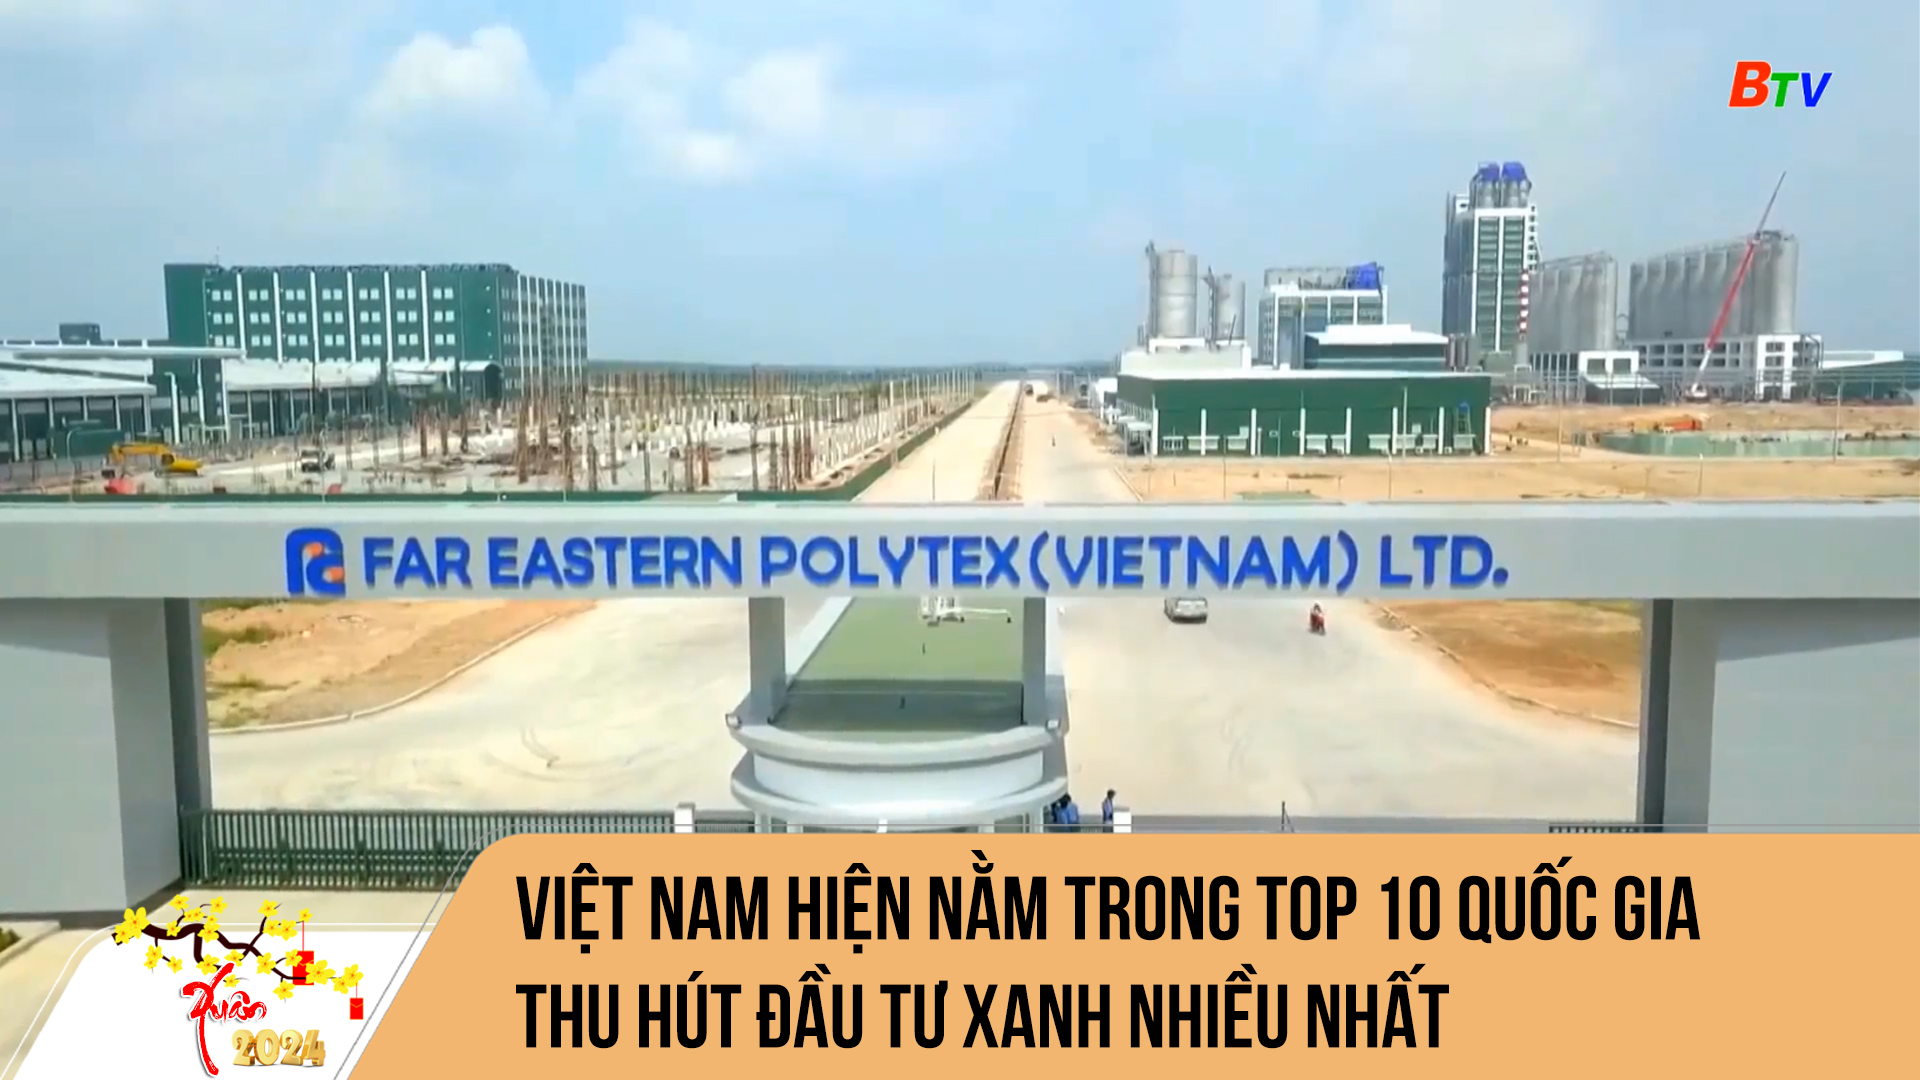 Việt Nam hiện nằm trong top 10 quốc gia thu hút đầu tư xanh nhiều nhất